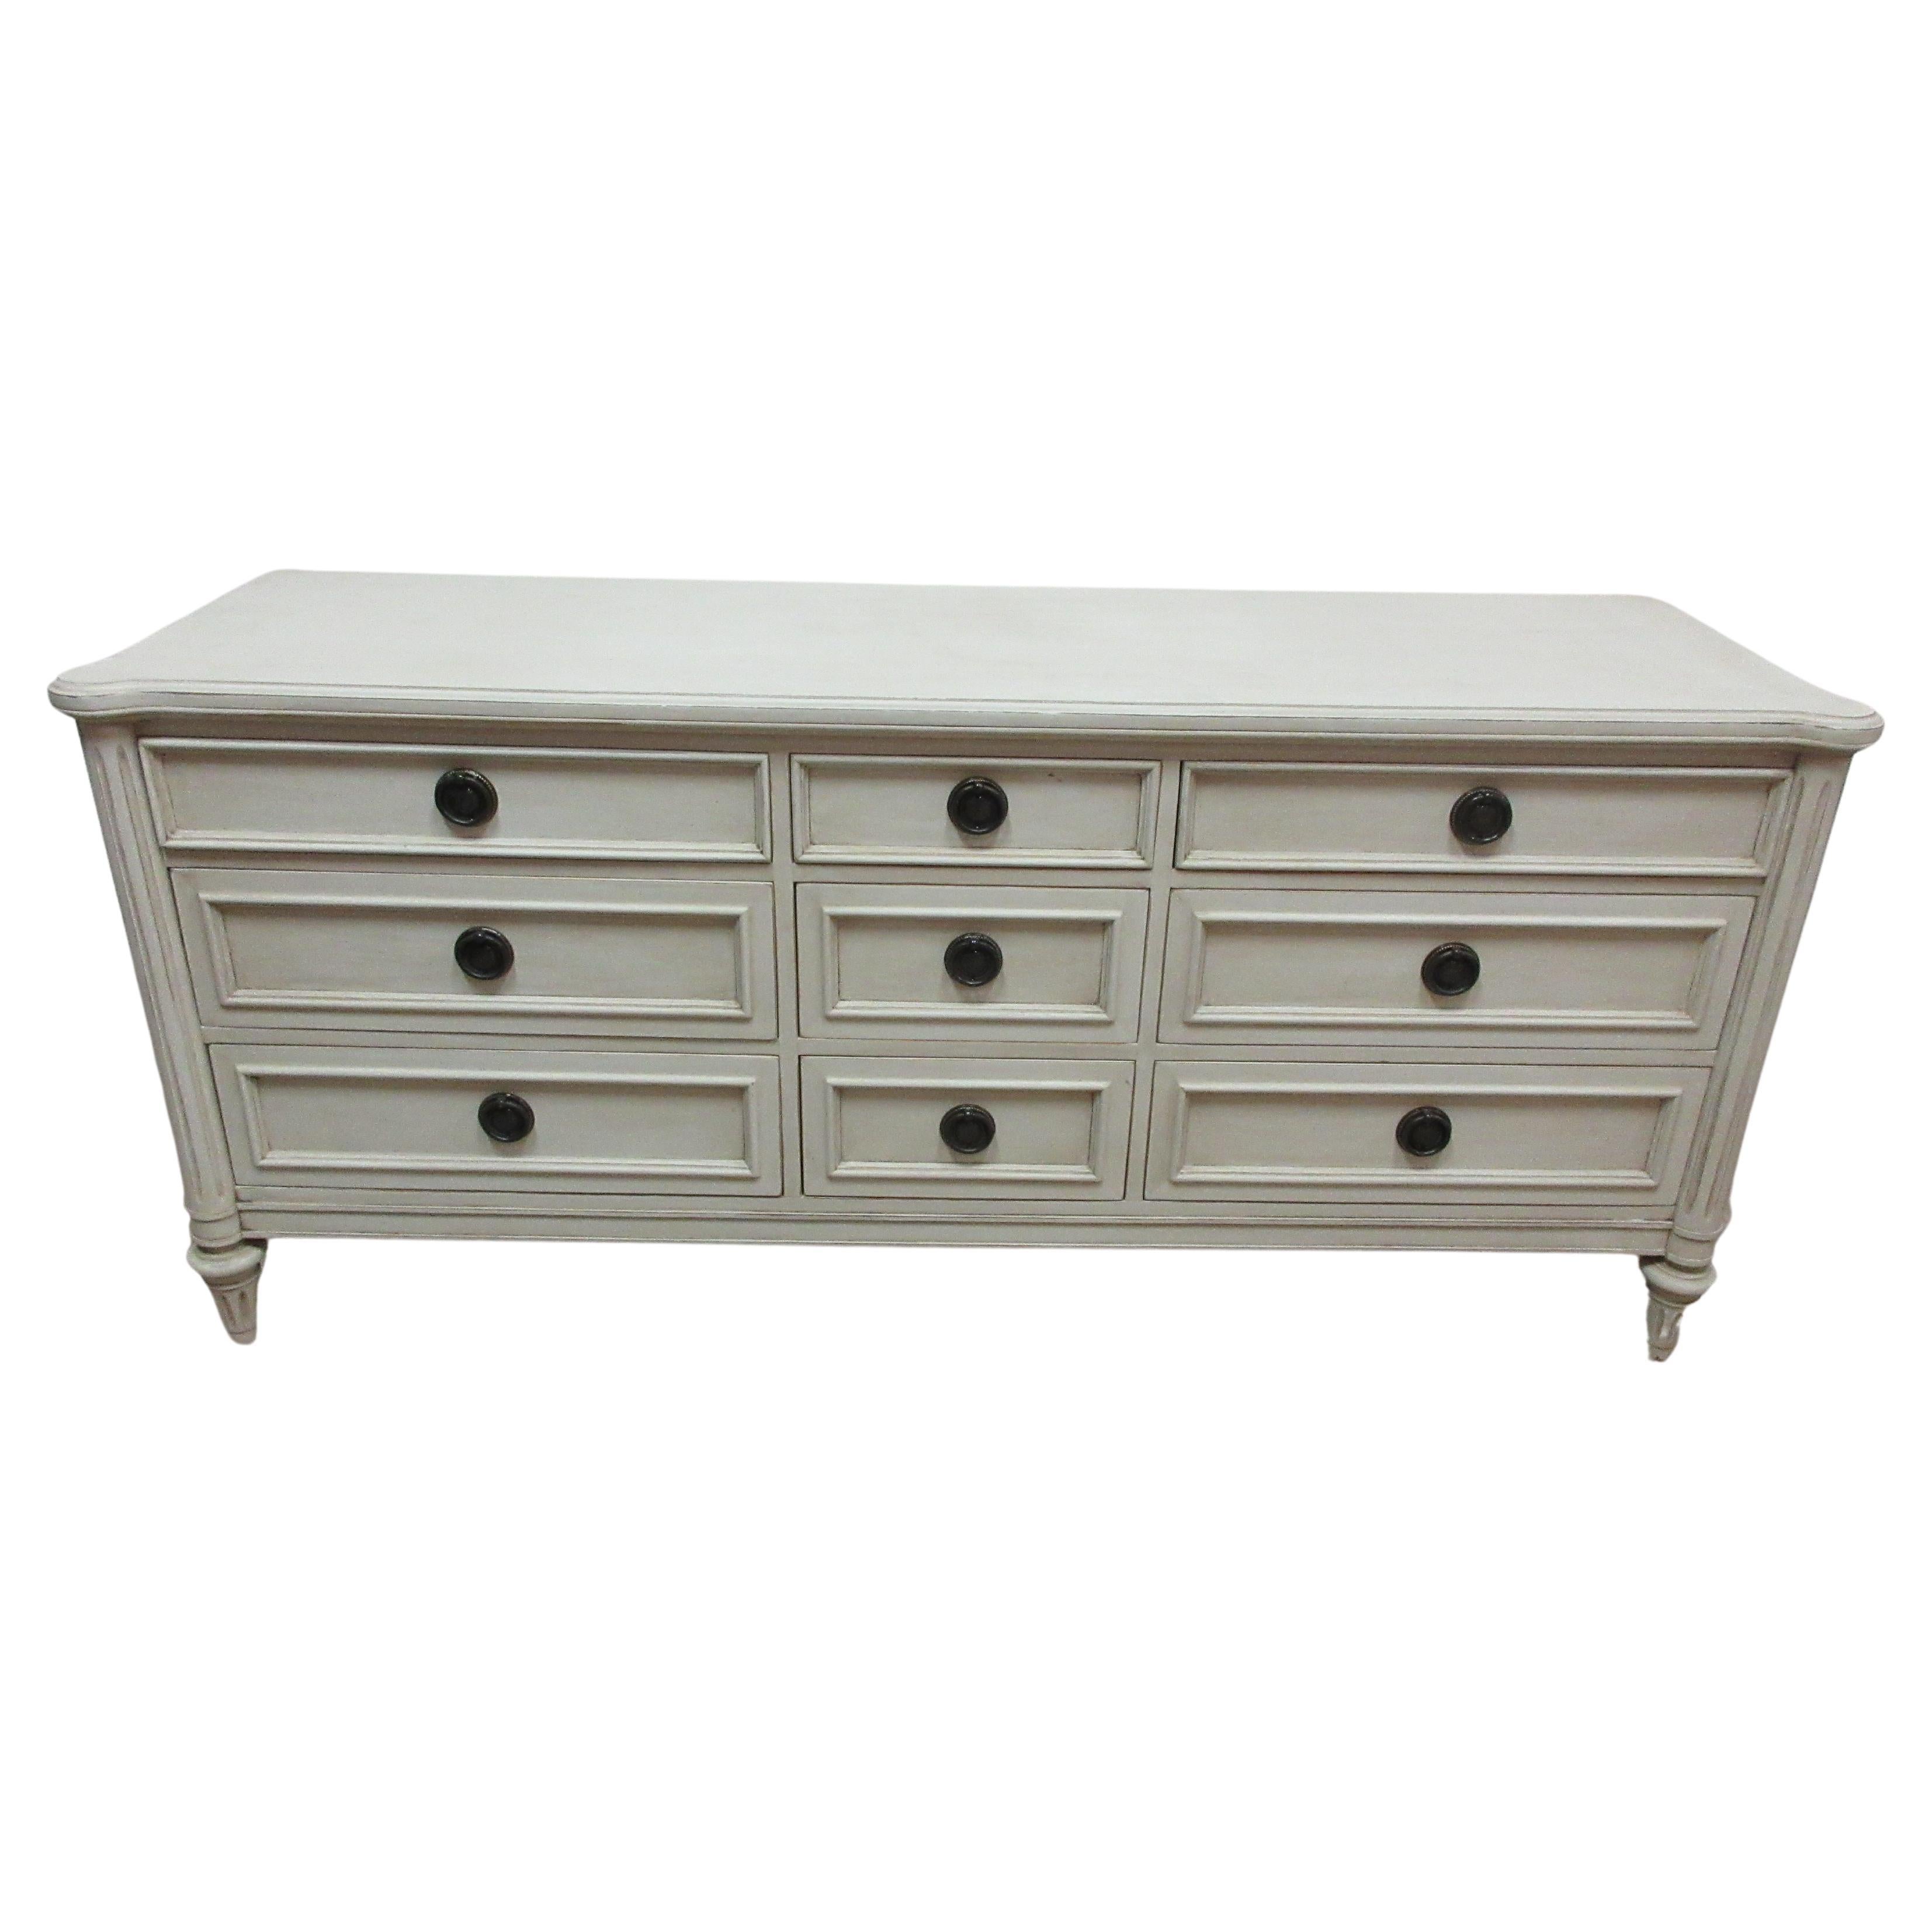 Gustavian Style 9 Drawer Dresser